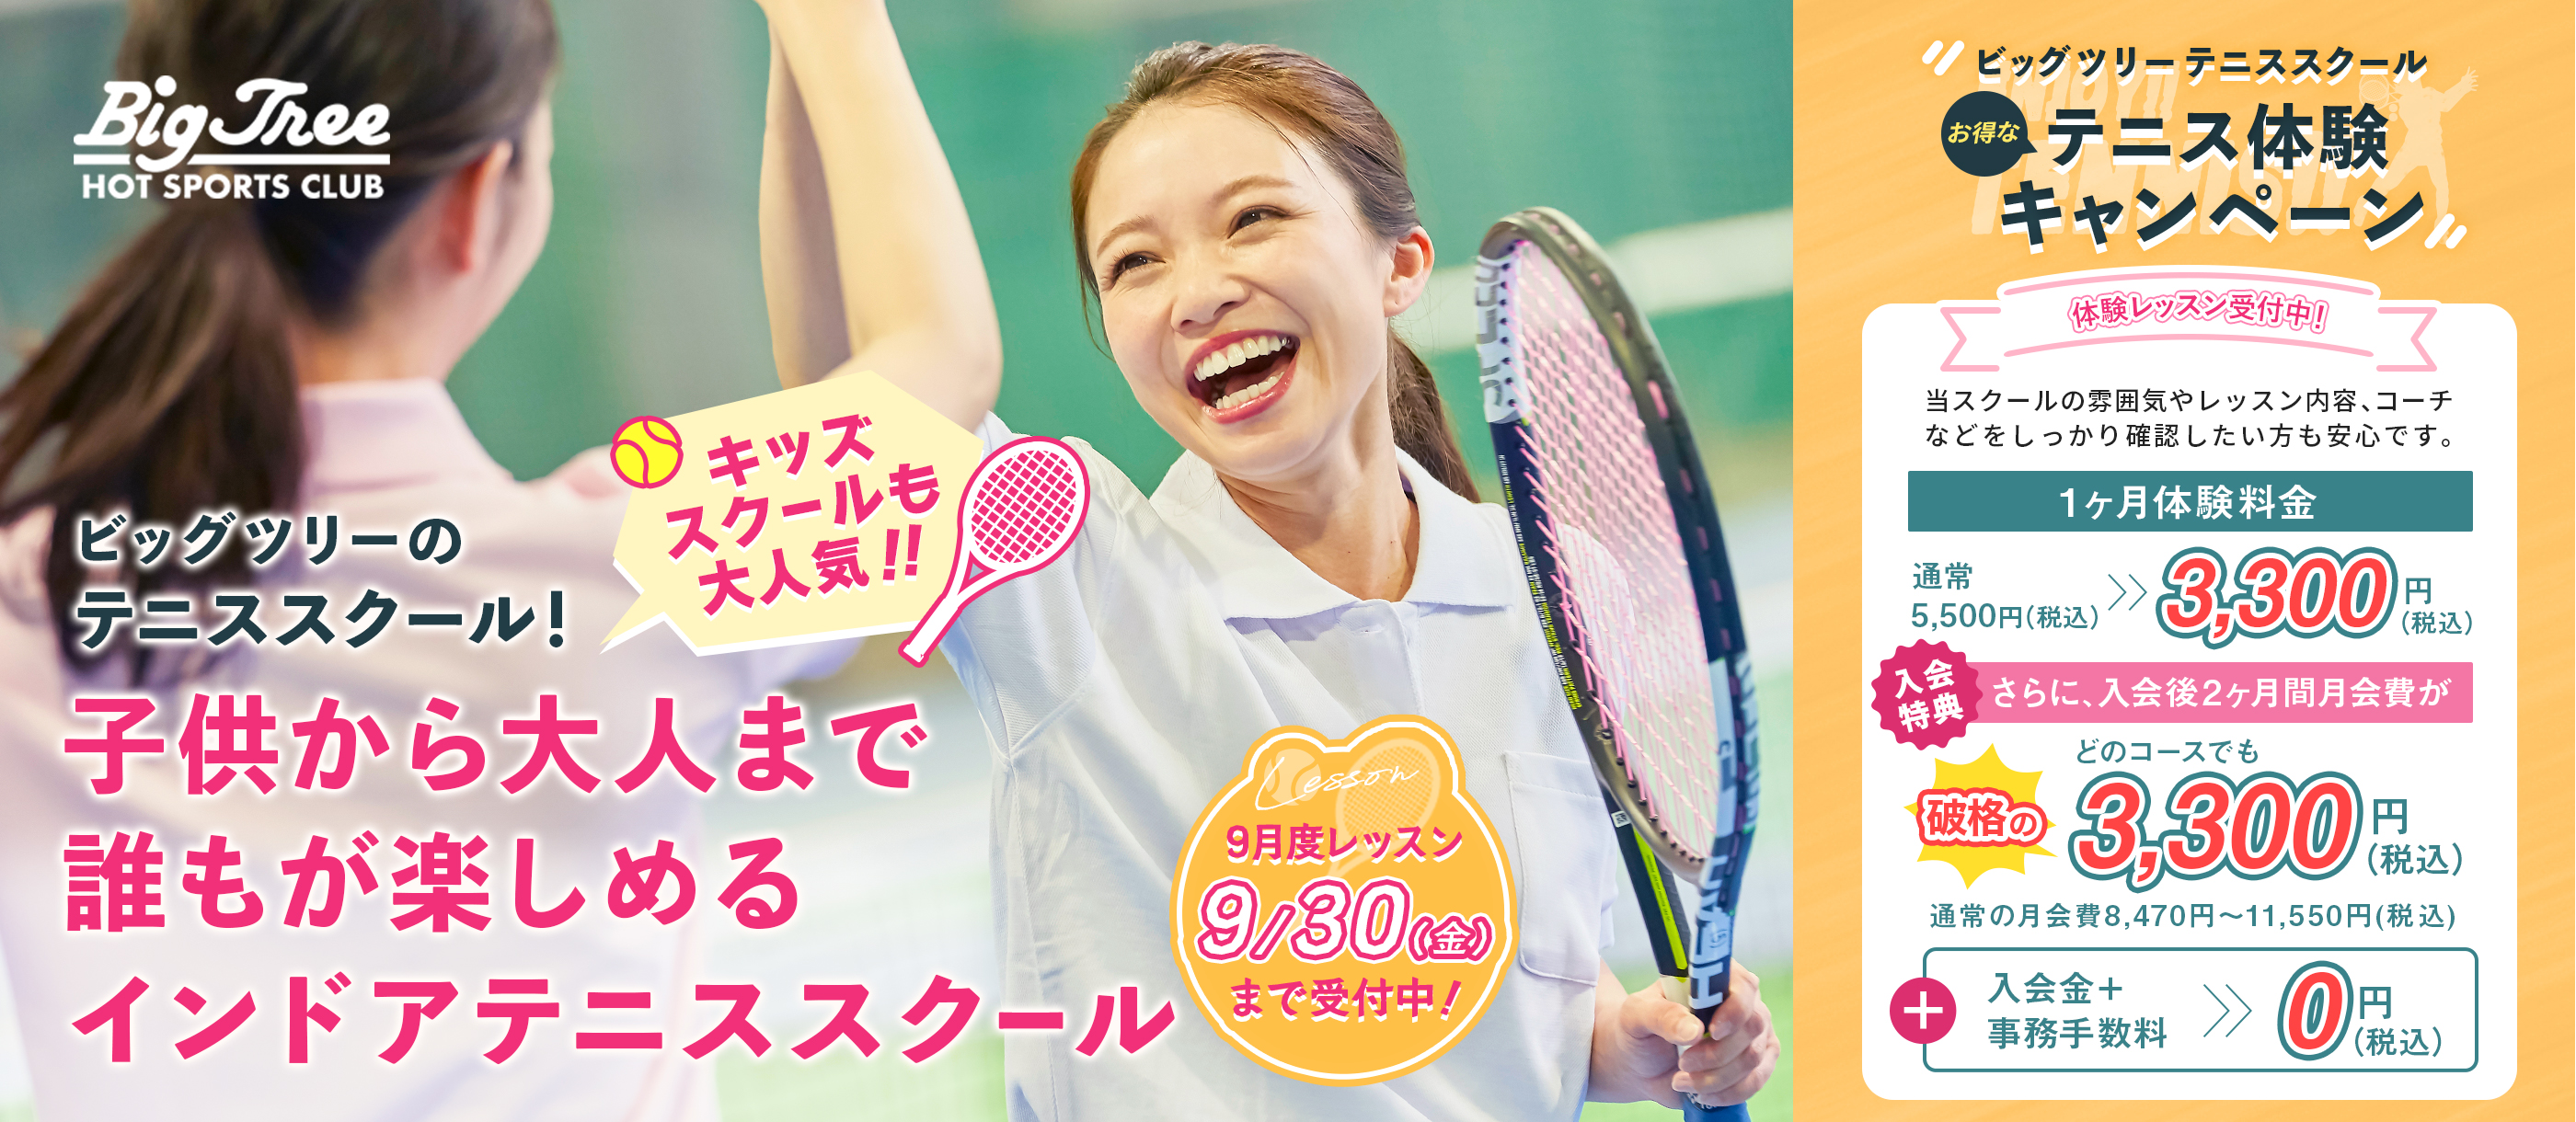 秋のテニス体験キャンペーン